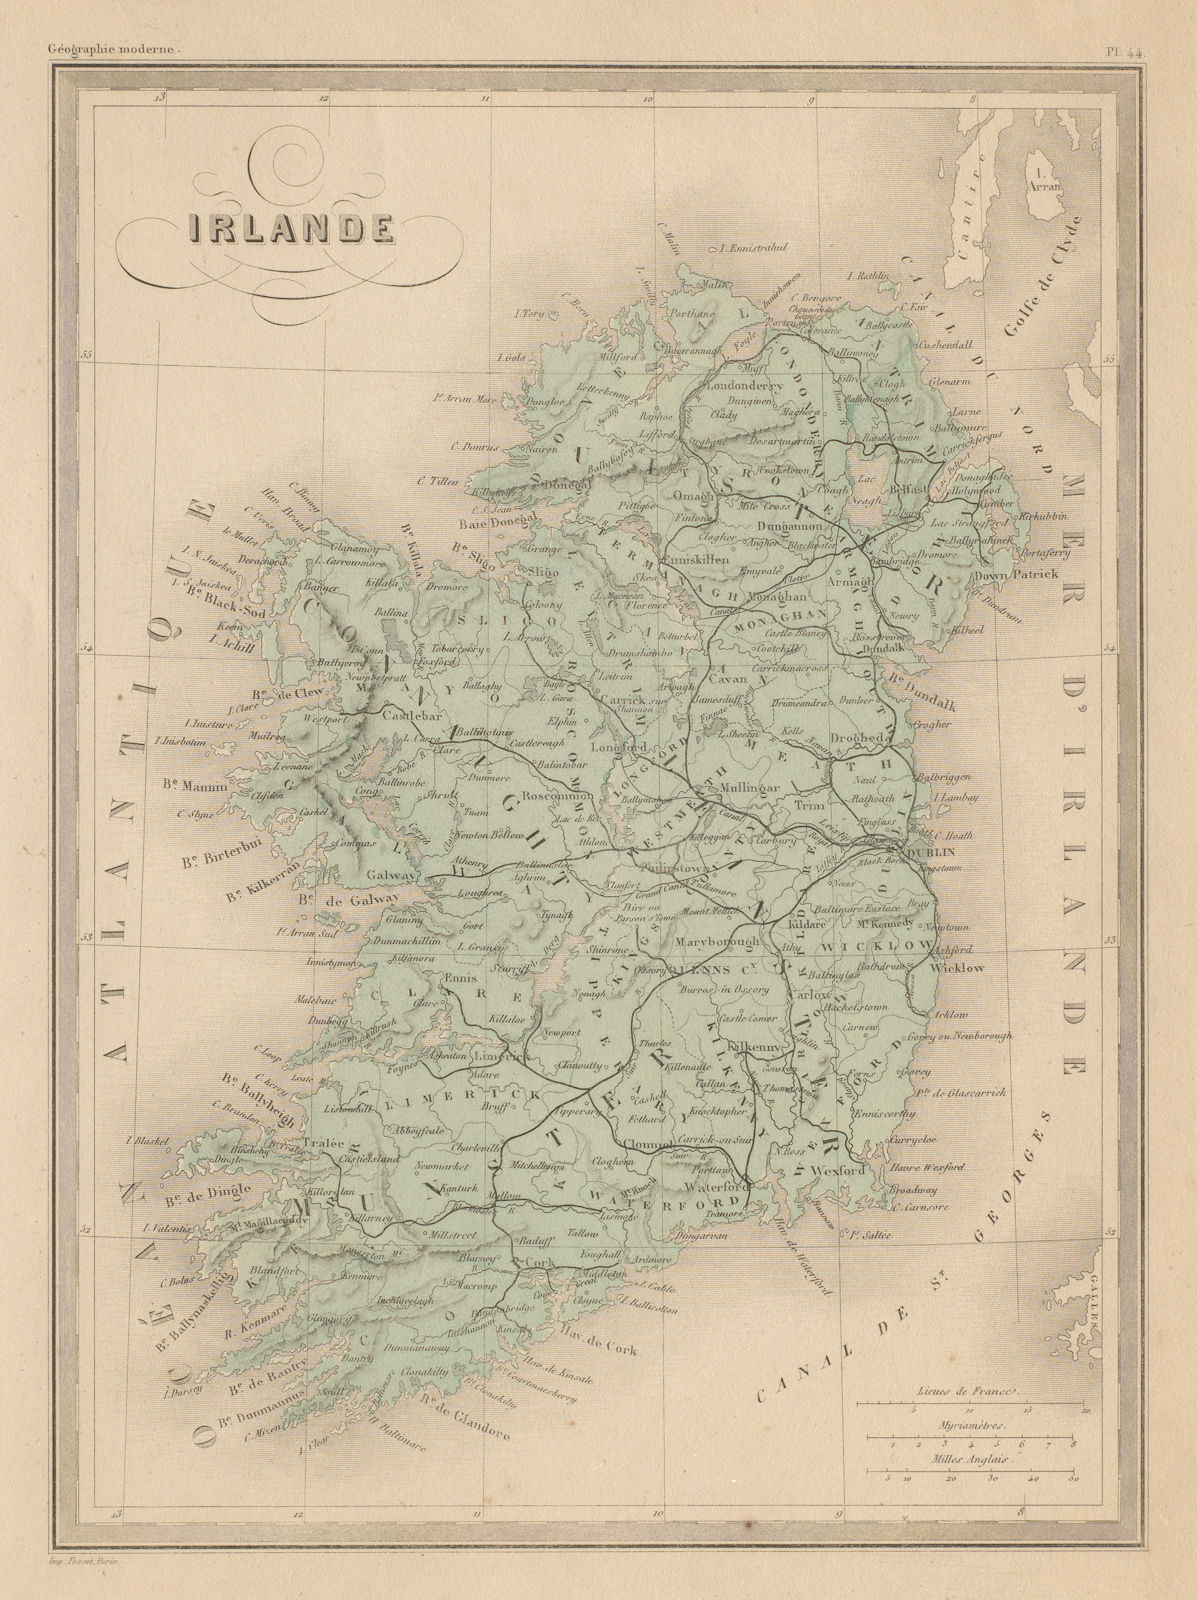 Irlande. Ireland. MALTE-BRUN c1871 old antique vintage map plan chart